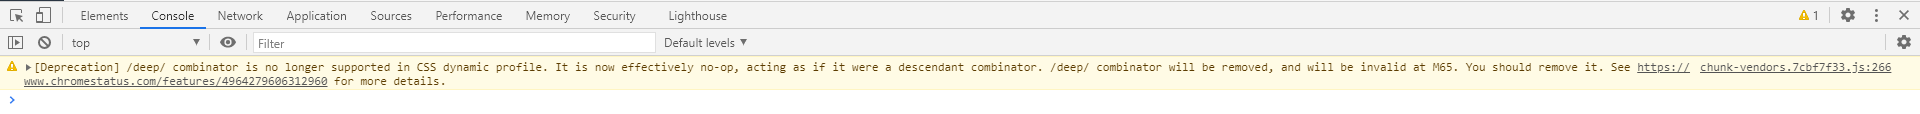 谷歌浏览器“/deep/ combinator is no longer supported in CSS dynamic profile.“警告问题解决方法